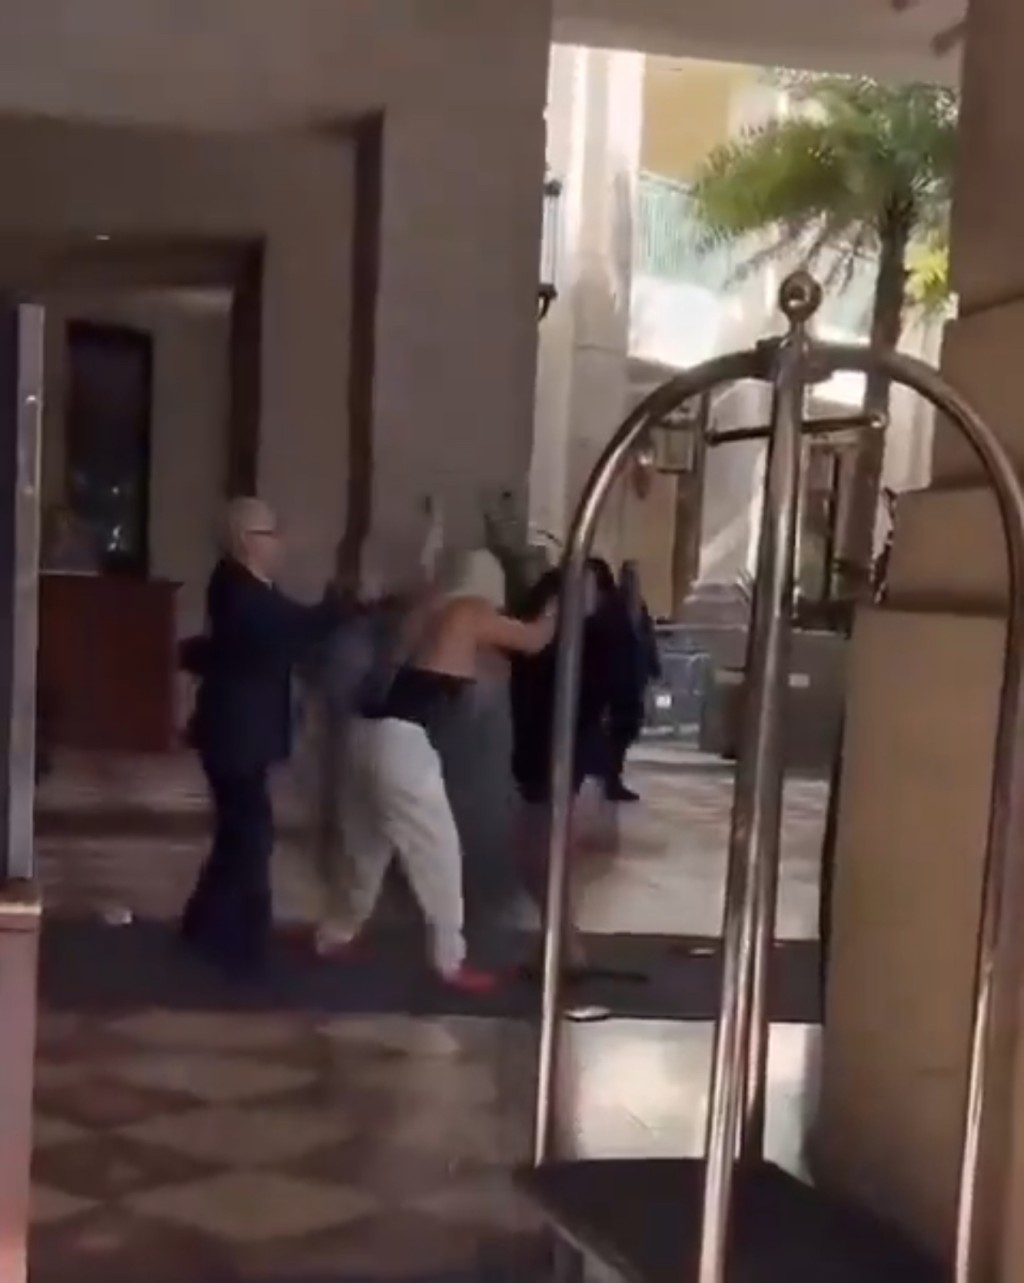 影片顯示兩名女子在酒店外拉扯，白褲tubetop女扯頭髮兼揮拳。